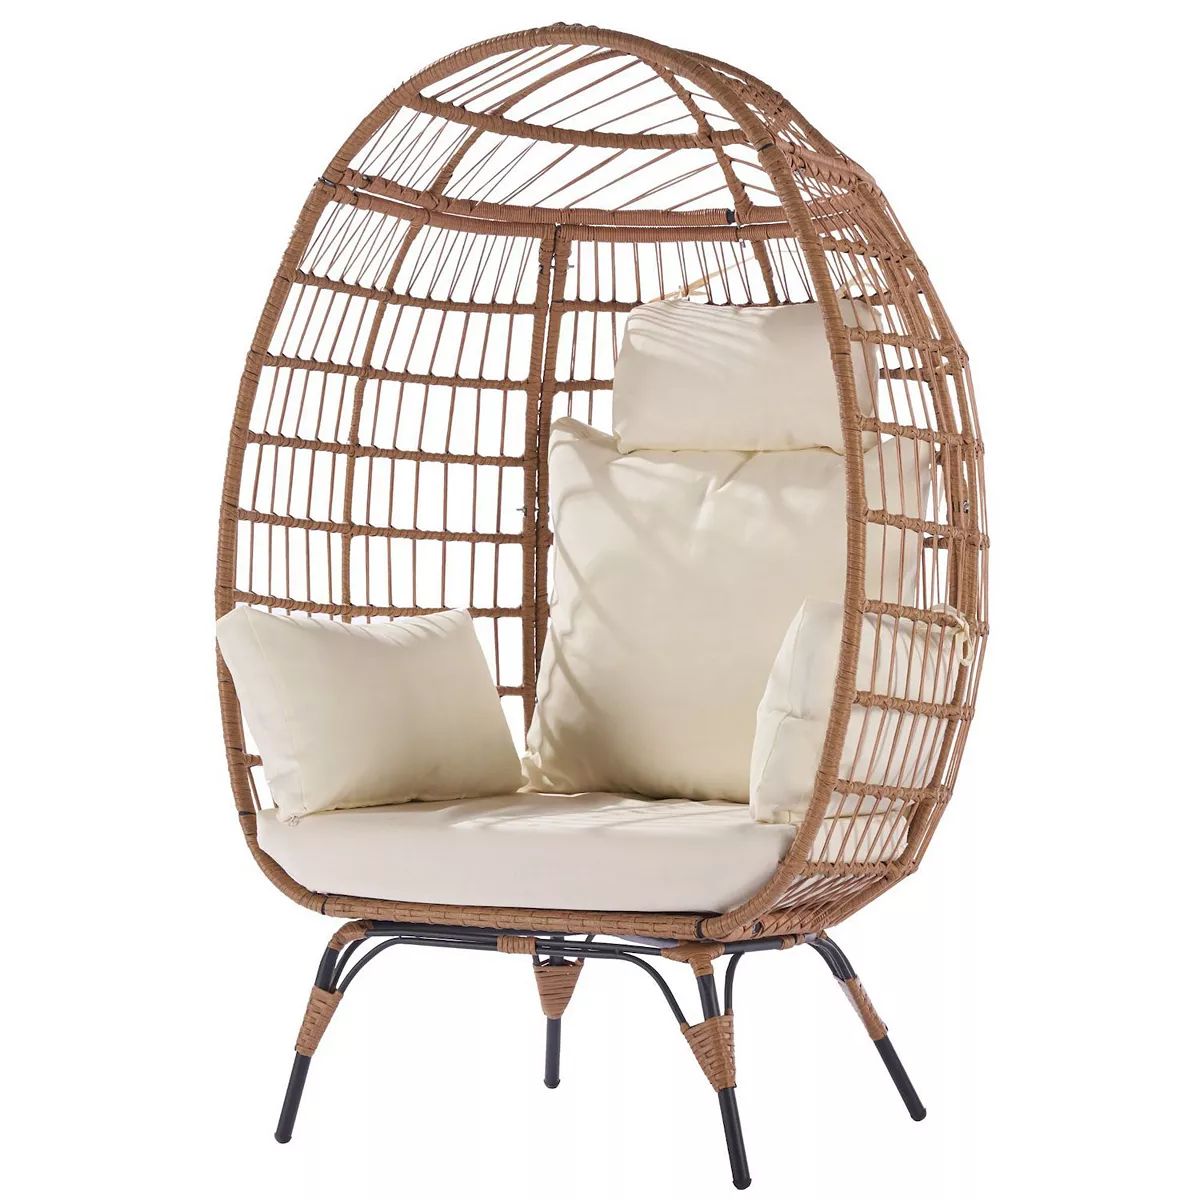 F.C Design Wicker Egg Chair: Oversized Lounger for Patio, Backyard, Living Room - Steel Frame, 5 ... | Kohl's